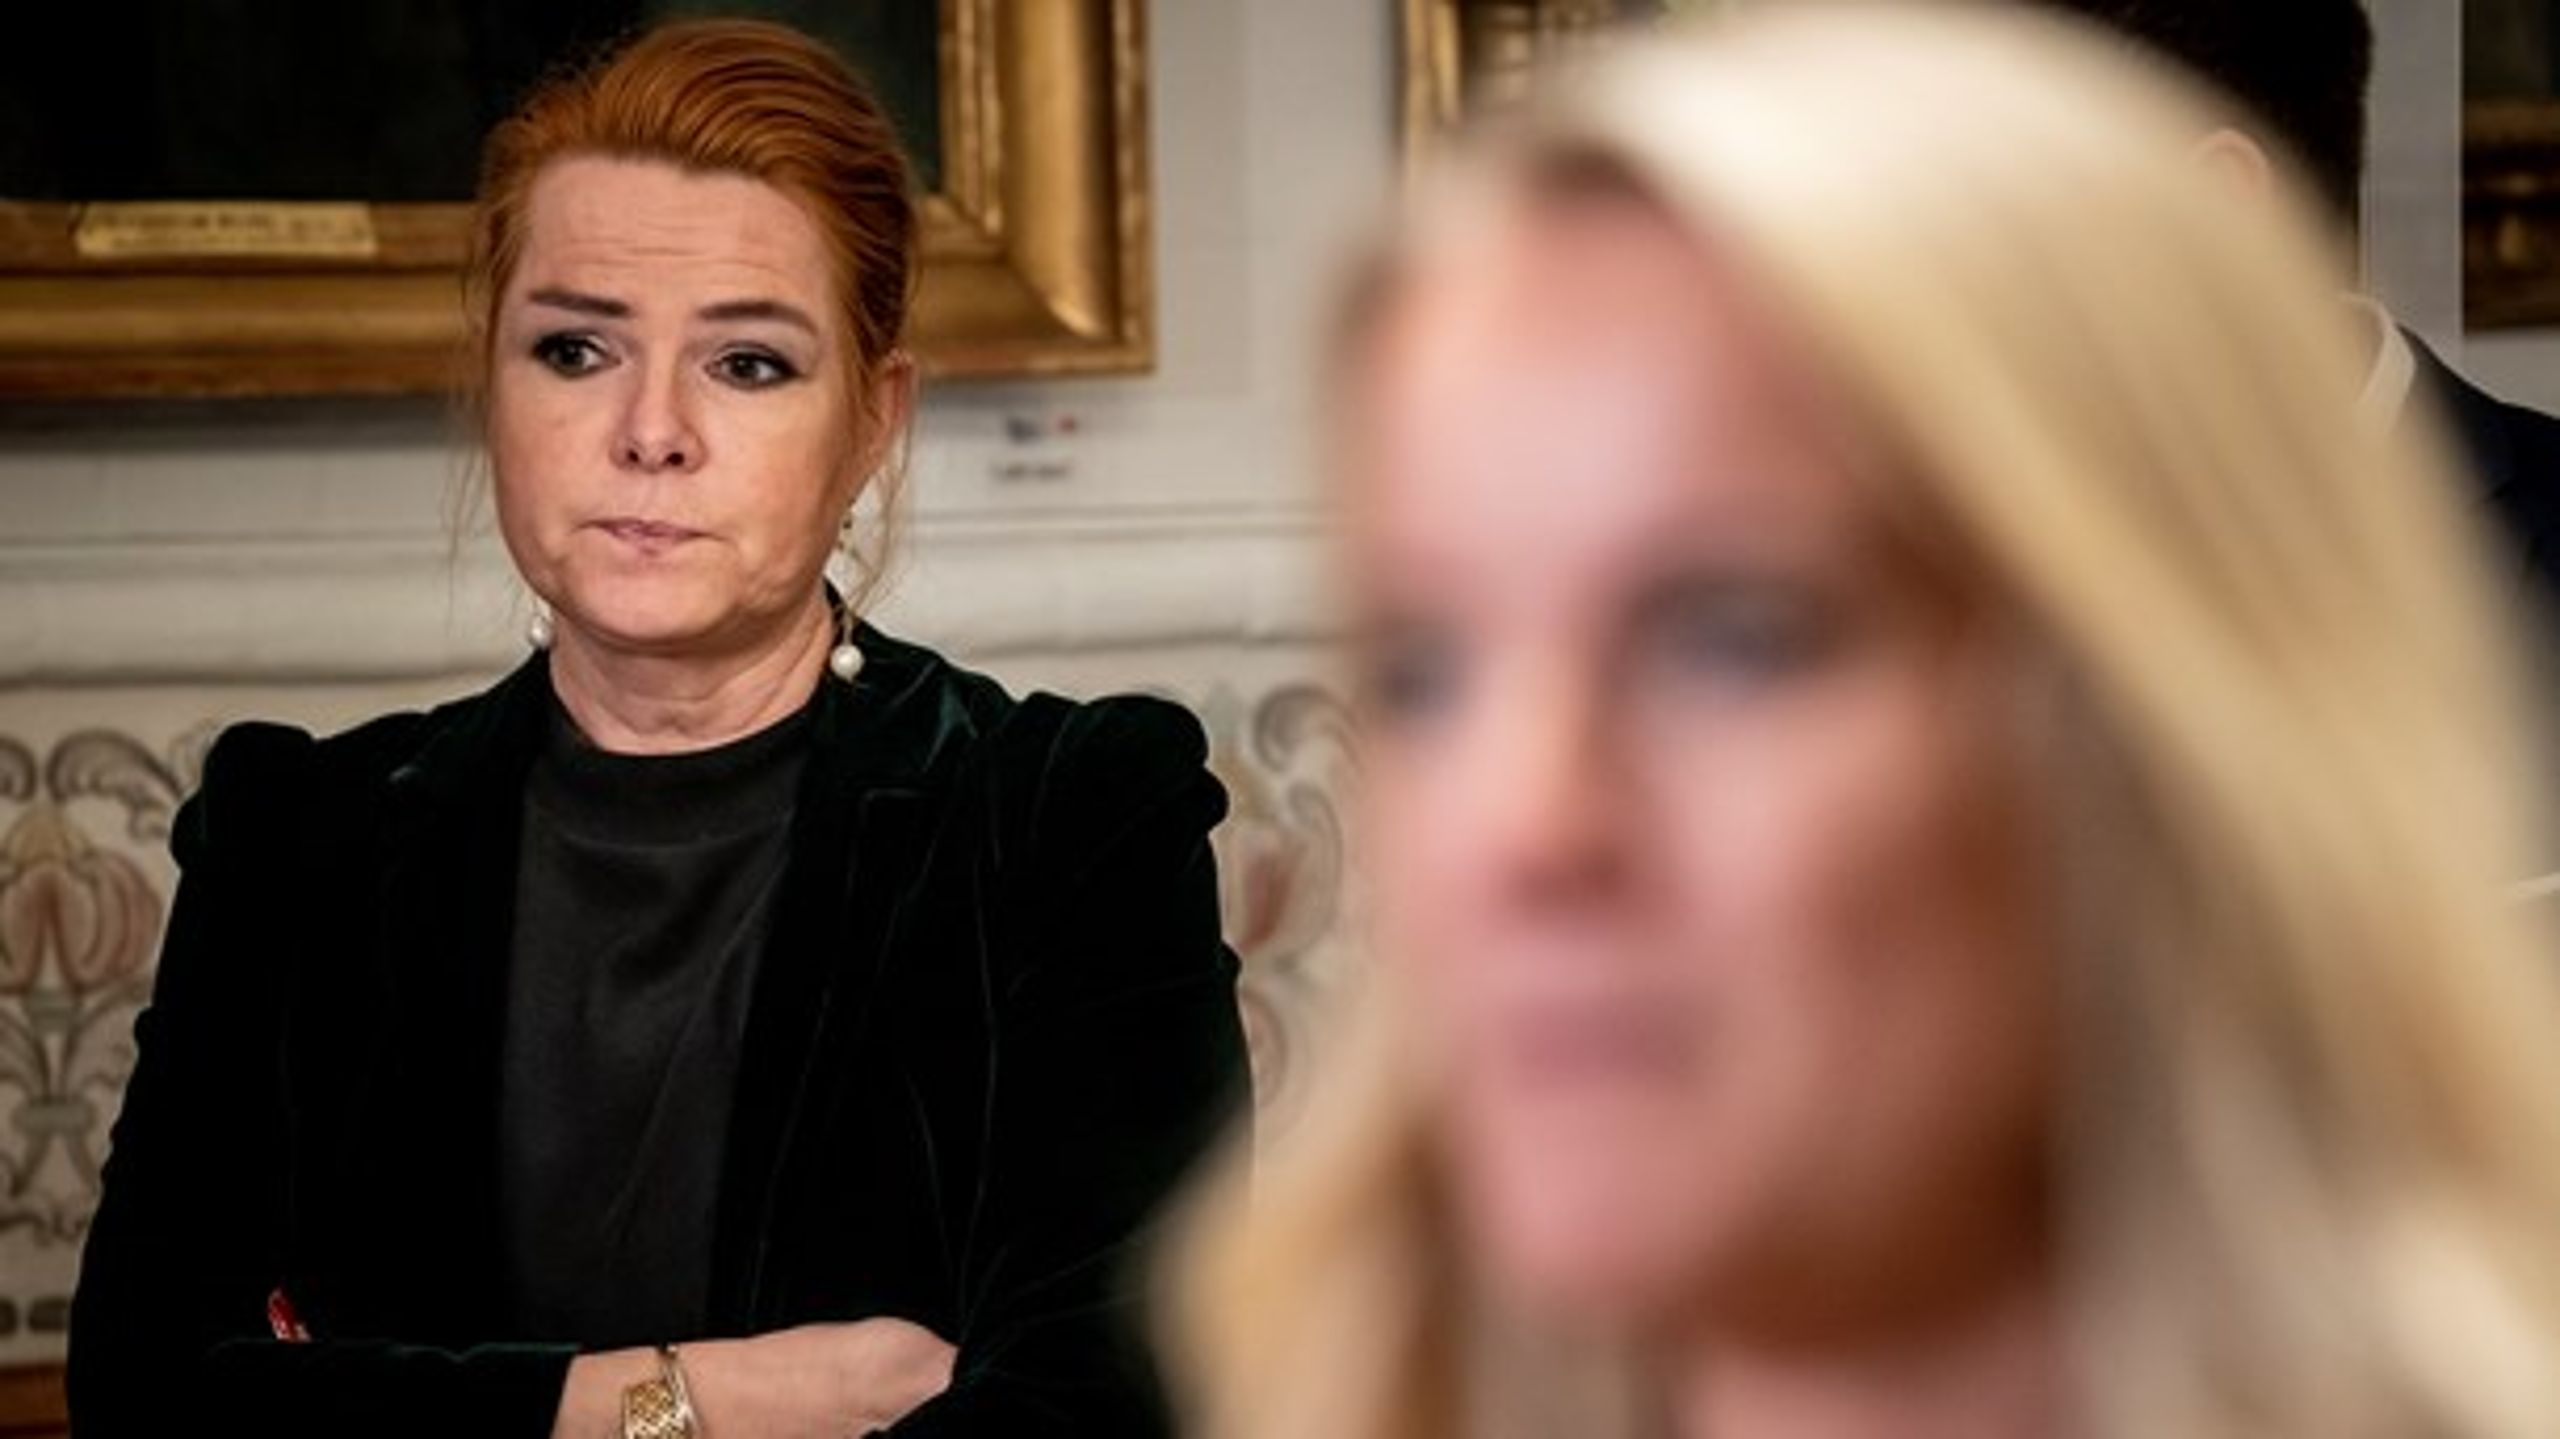 “Det kom som noget af en overraskelse for mig. Jeg skal lige tænke mig om et stykke tid," siger Inger Støjberg efter hendes exit som næstforman i Venstre.